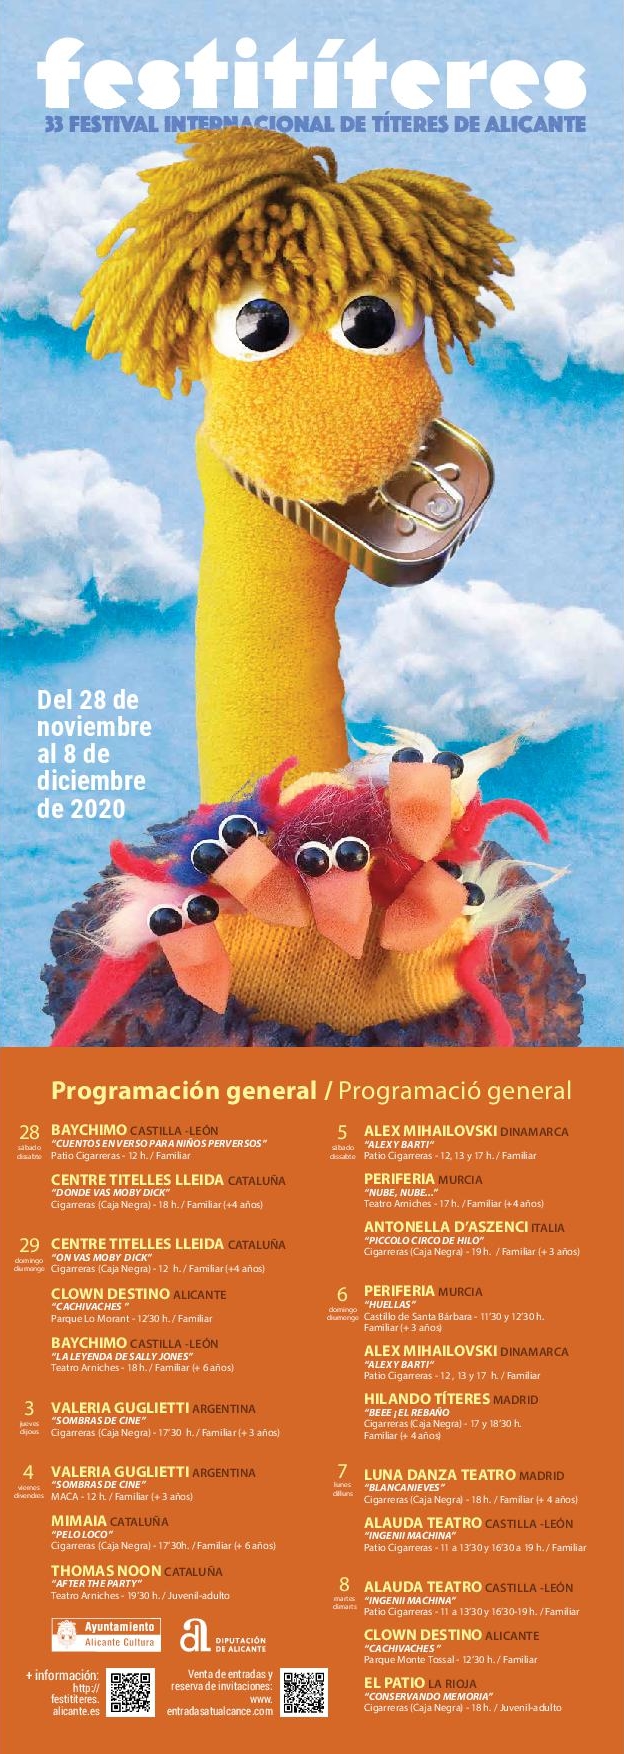 Festititeres 2020. "Donde vas Moby Dick" Agenda Cultural de Alicante